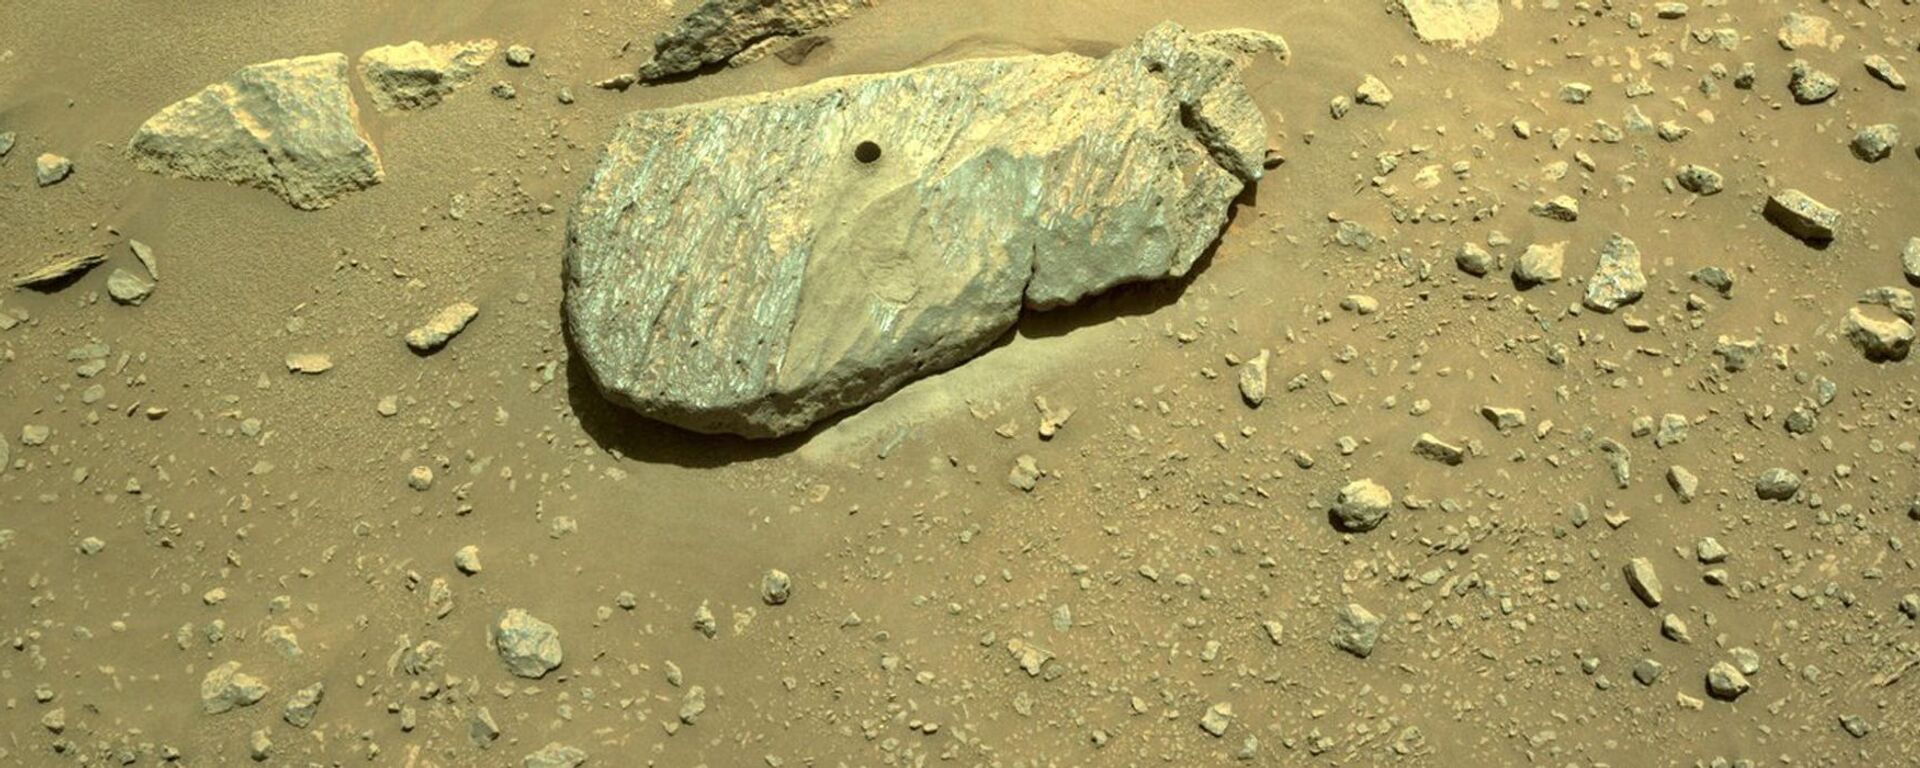 Composto de duas imagens obtidas por uma das câmeras de navegação do rover Perseverance da NASA mostra o buraco perfurado durante sua segunda tentativa de coleta de amostras. As imagens, tiradas em 1º de setembro de 2021 (no 190º sol, ou dia marciano, da missão) na unidade geológica Cratera de Piso Fraturado Rugoso na Cratera Jezero de Marte. A equipe de pesquisa apelidou a rocha de Rochette e o local na rocha onde a amostra foi obtida de Montdenier - Sputnik Brasil, 1920, 21.06.2022